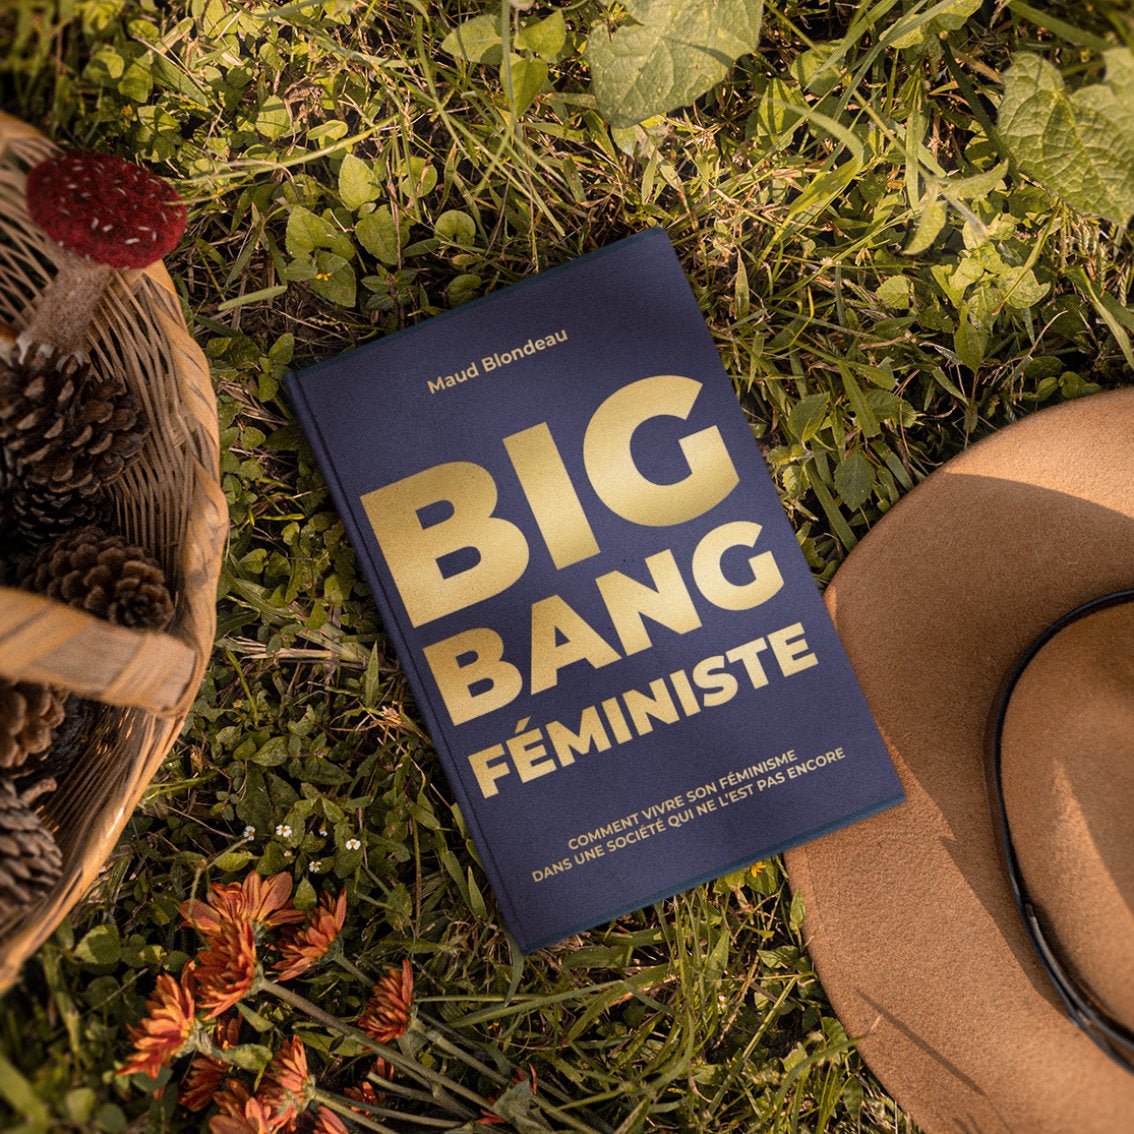 Big Bang Féministe. Comment vivre son féminisme? - Gang du Clito